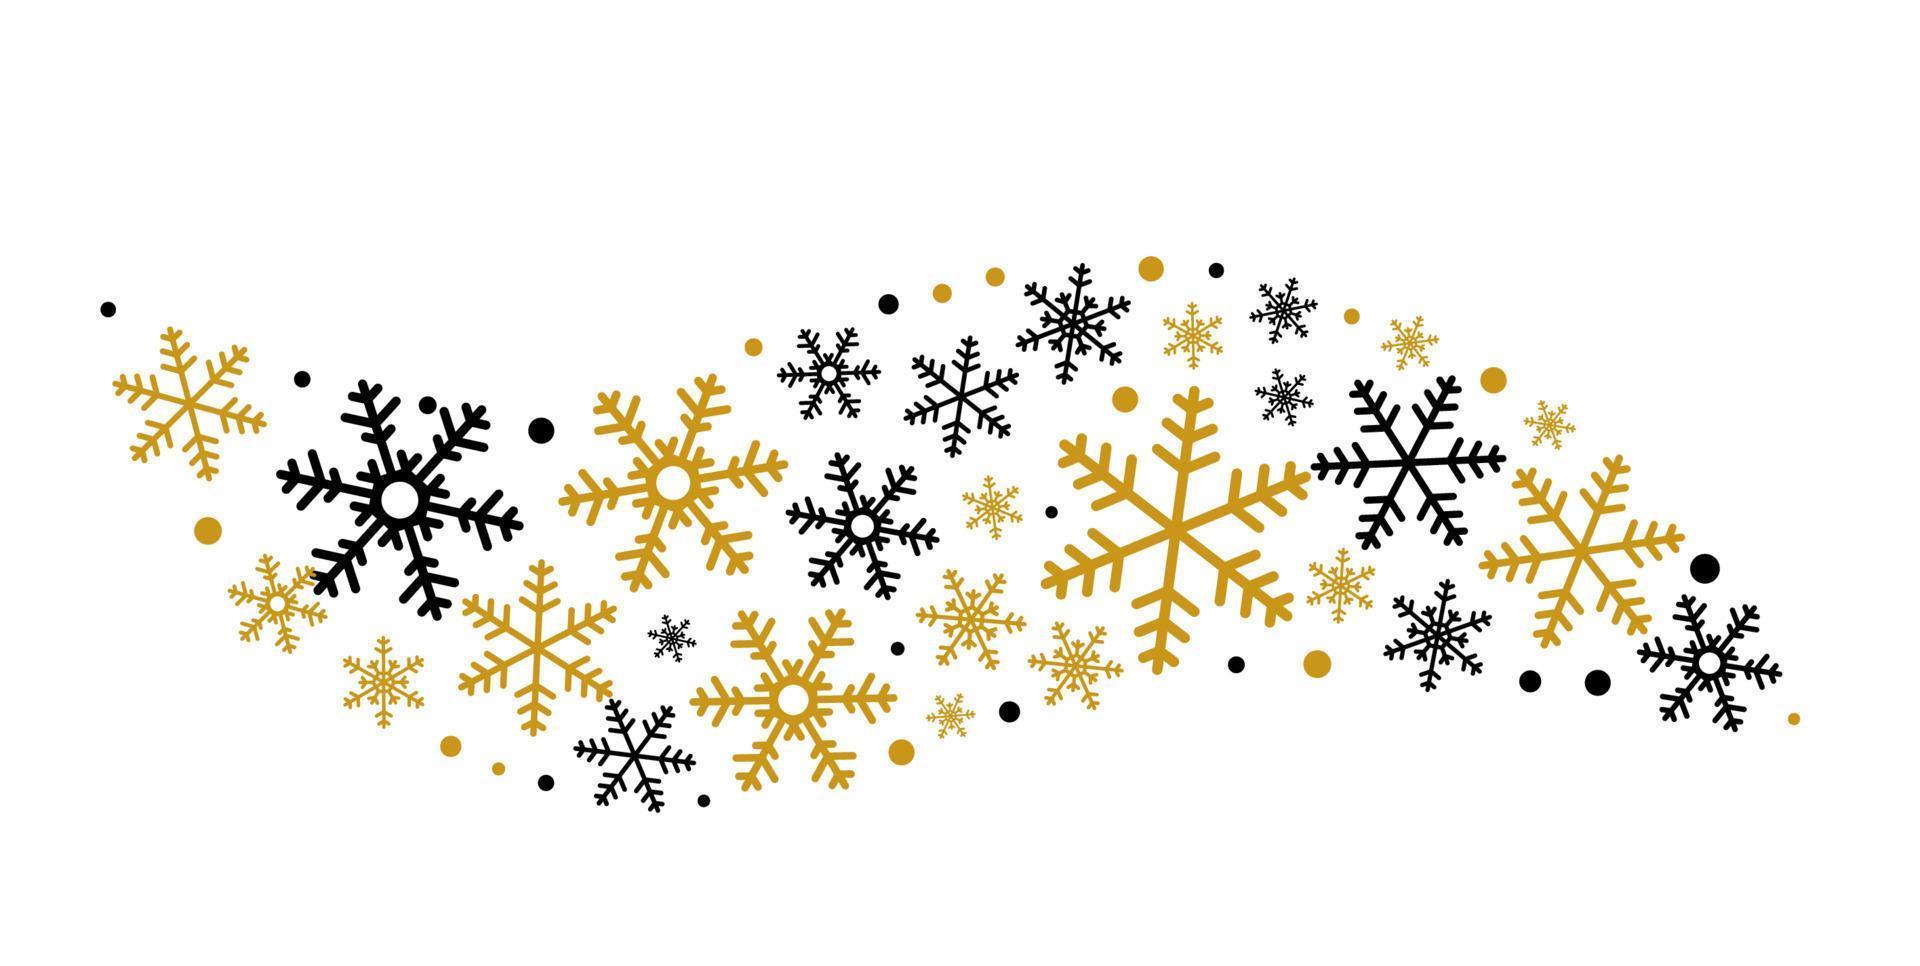 goldene schwarze schneeflocken .weihnachtsgrußverzierungselemente, die lokalisierte weiße hintergrundkarte hängen vektor